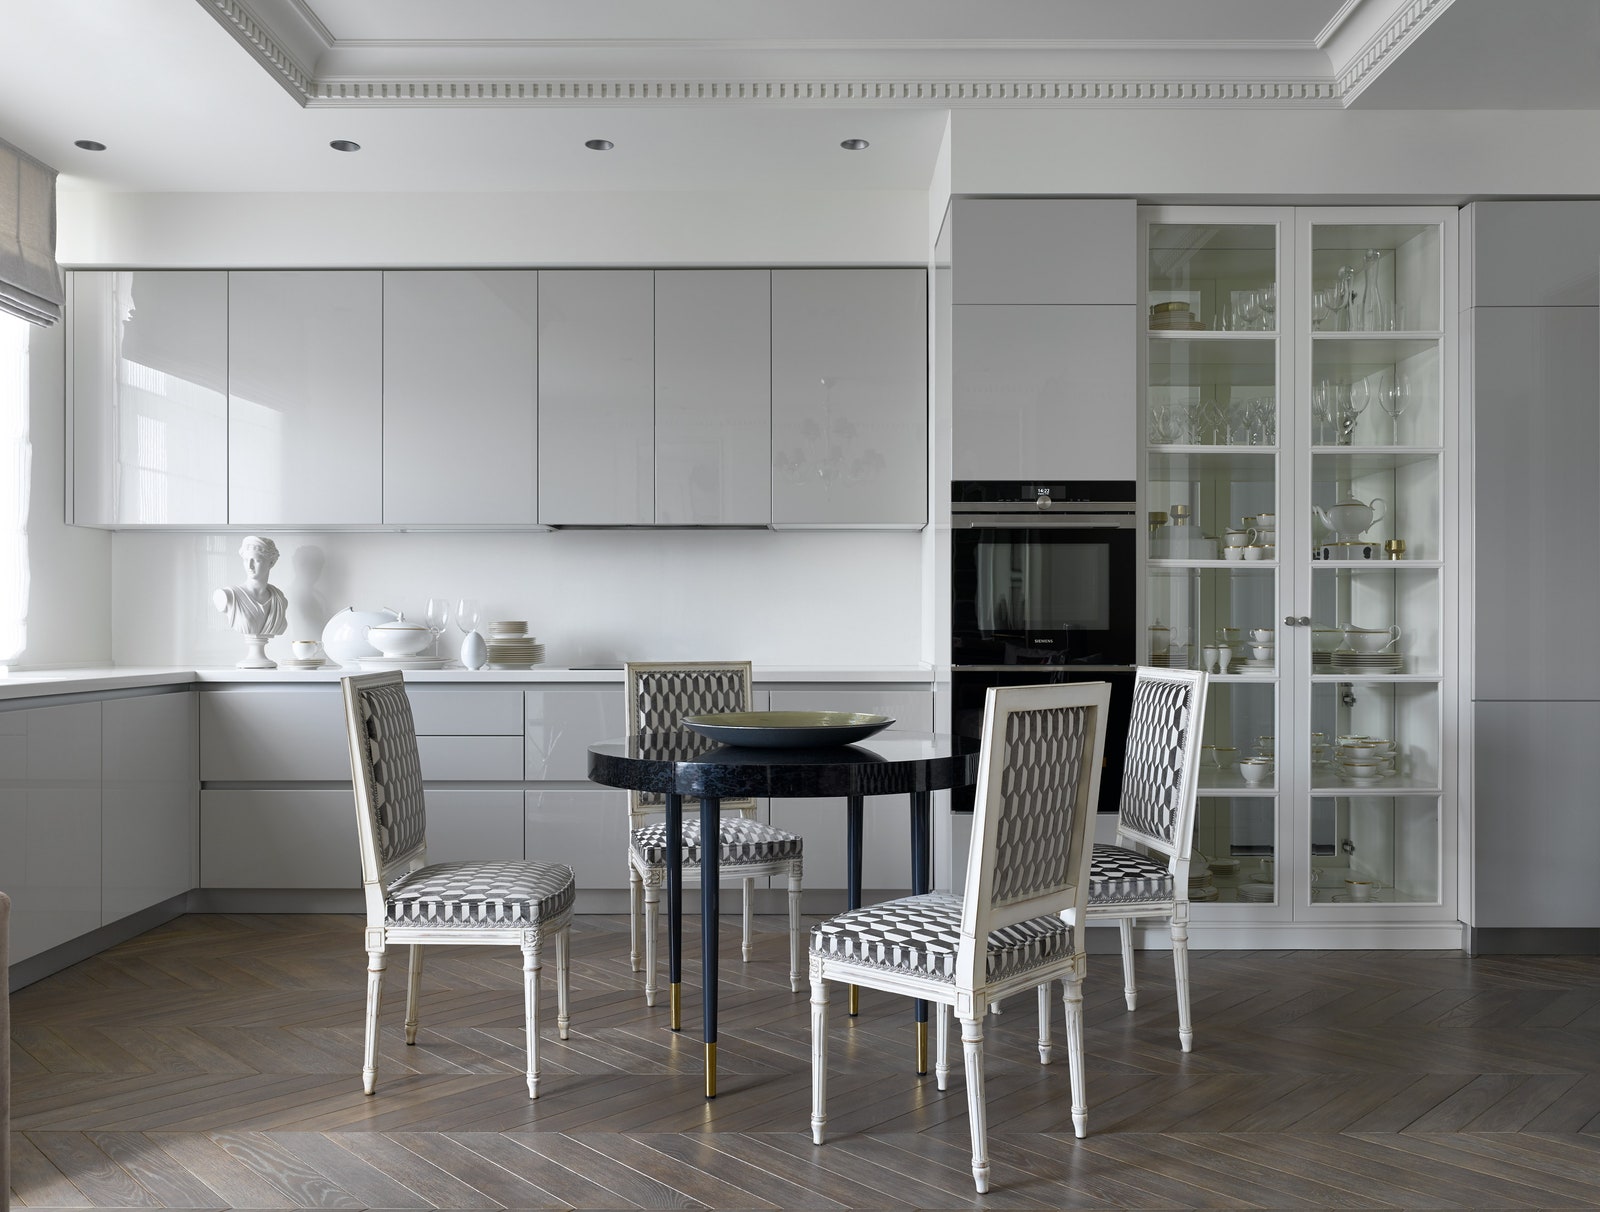 Фрагмент кухни. Кухня Scavolini классические стулья обиты современной тканью с чернобелым принтом витрина изготовлена на...